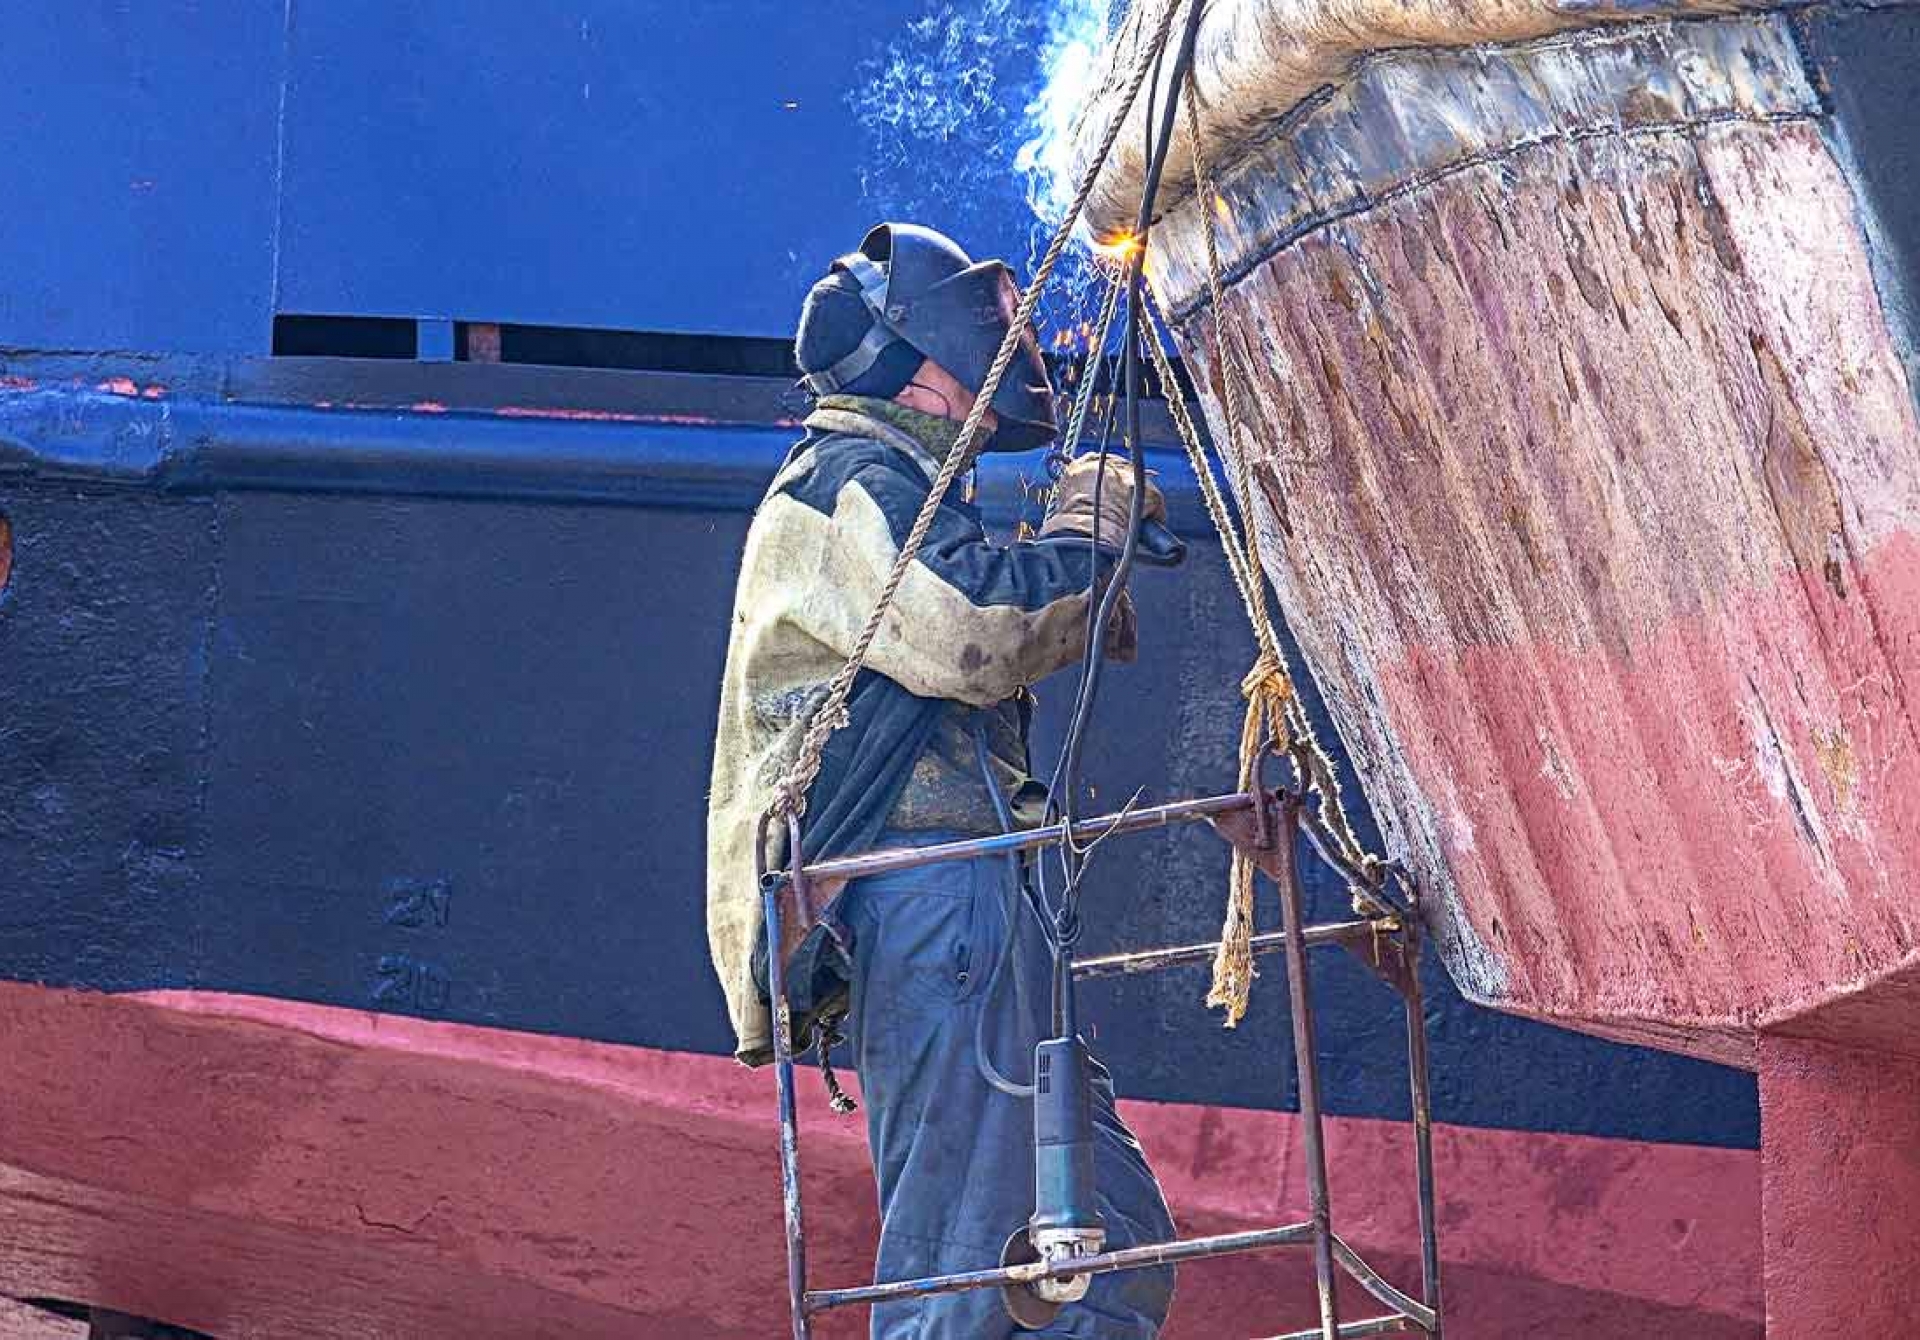 Servicio de Reparación de Barcos en Torredembarra: Expertos en Soluciones y Mantenimiento de Embarcaciones